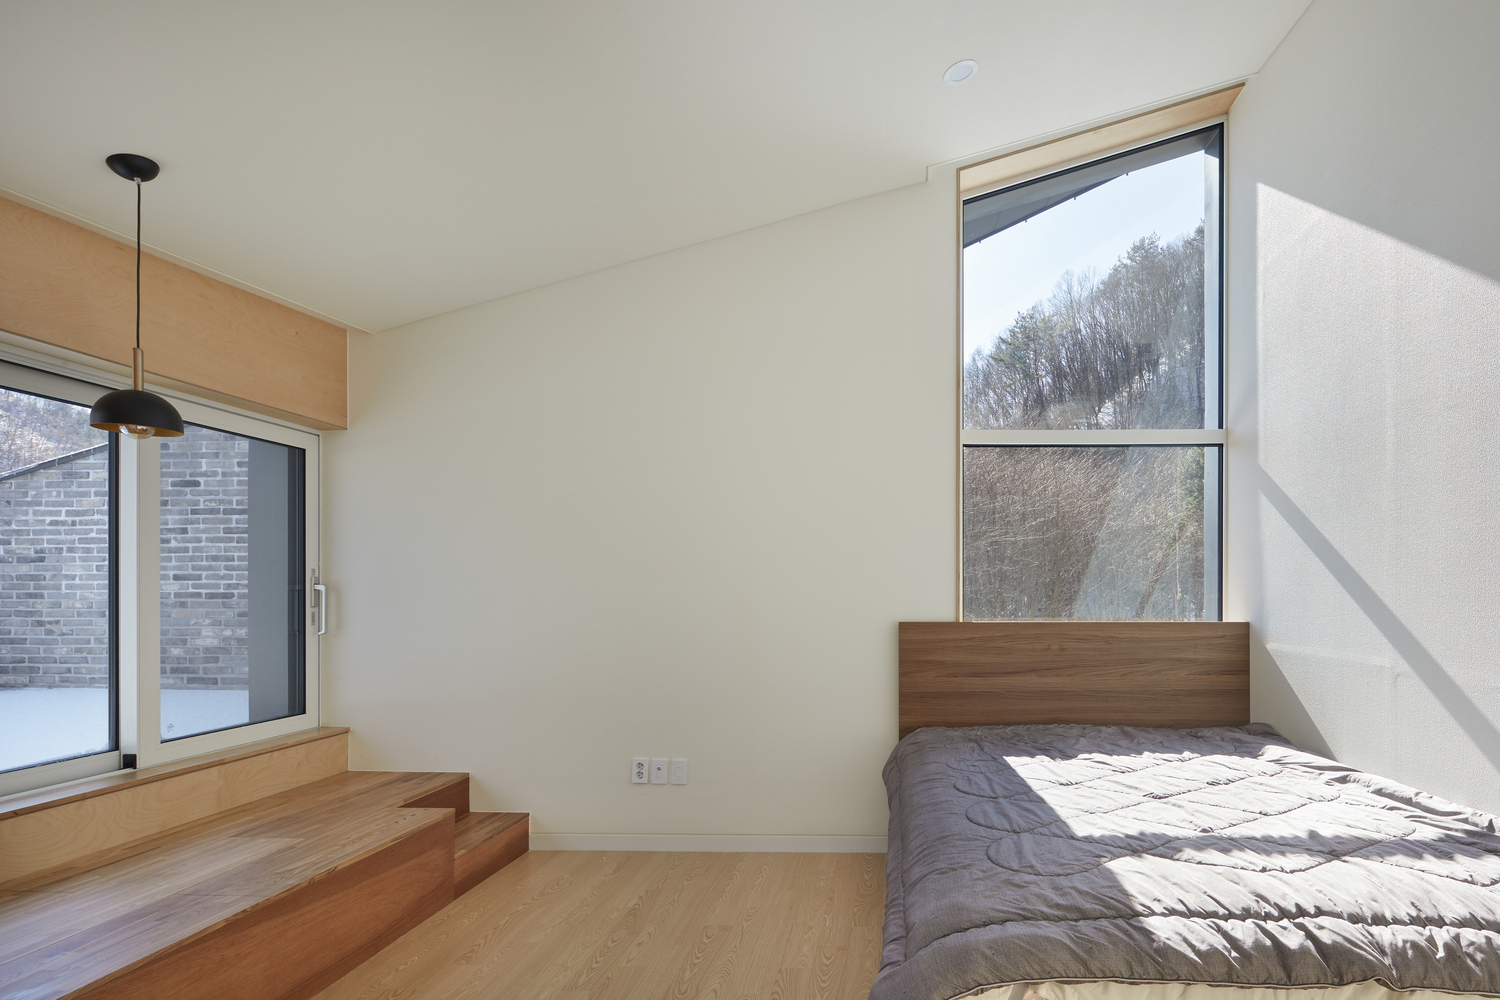 hình ảnh phòng ngủ trong nhà mái dốc với giường gỗ mộc mạc, cửa sổ kính trong suốt